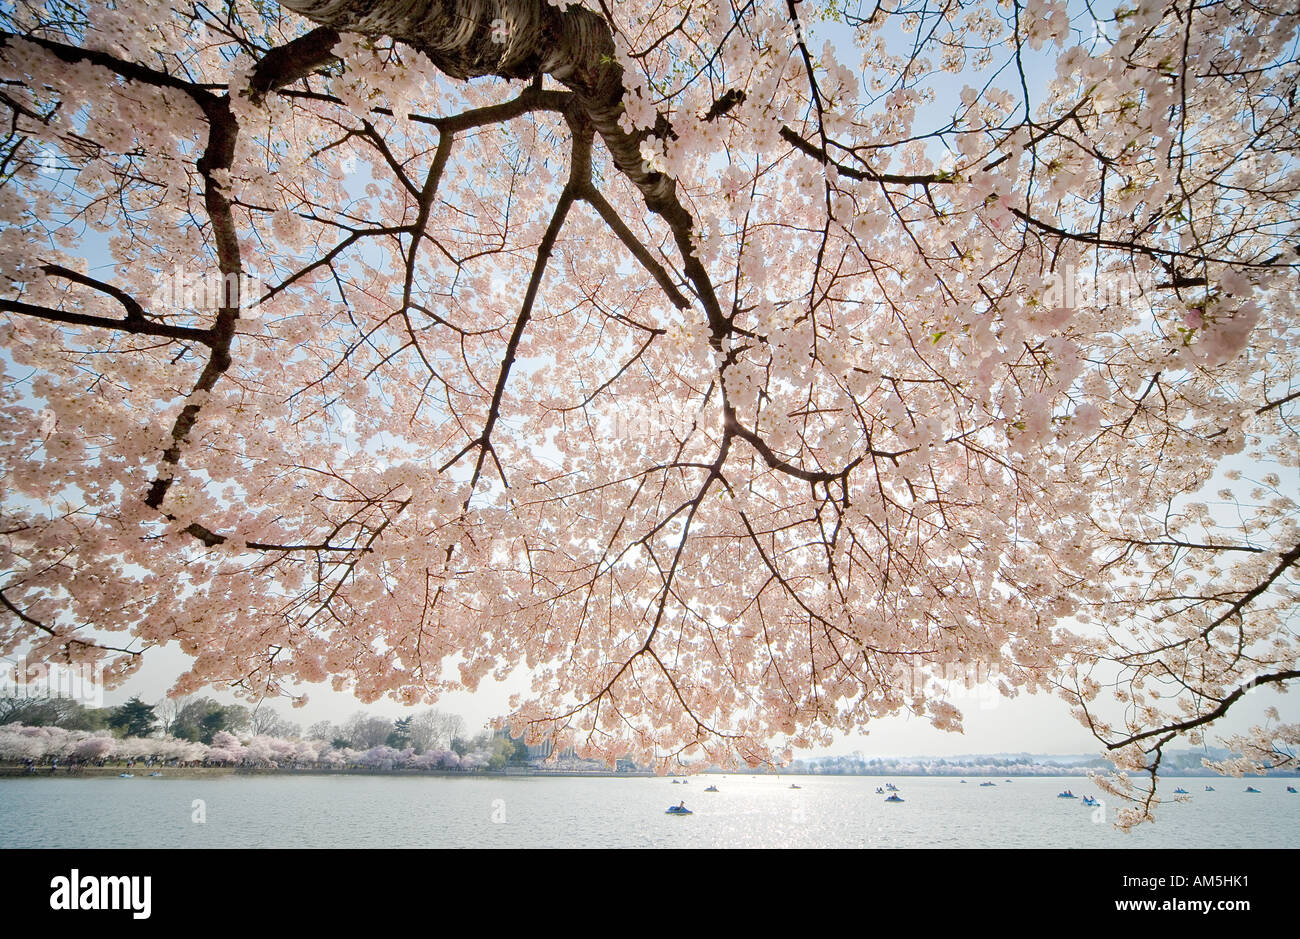 Gli alberi di ciliegio in fiore di picco in tutto il bacino di marea a Washington DC, Stati Uniti d'America, durante il National Cherry Blossom Festival. Foto Stock